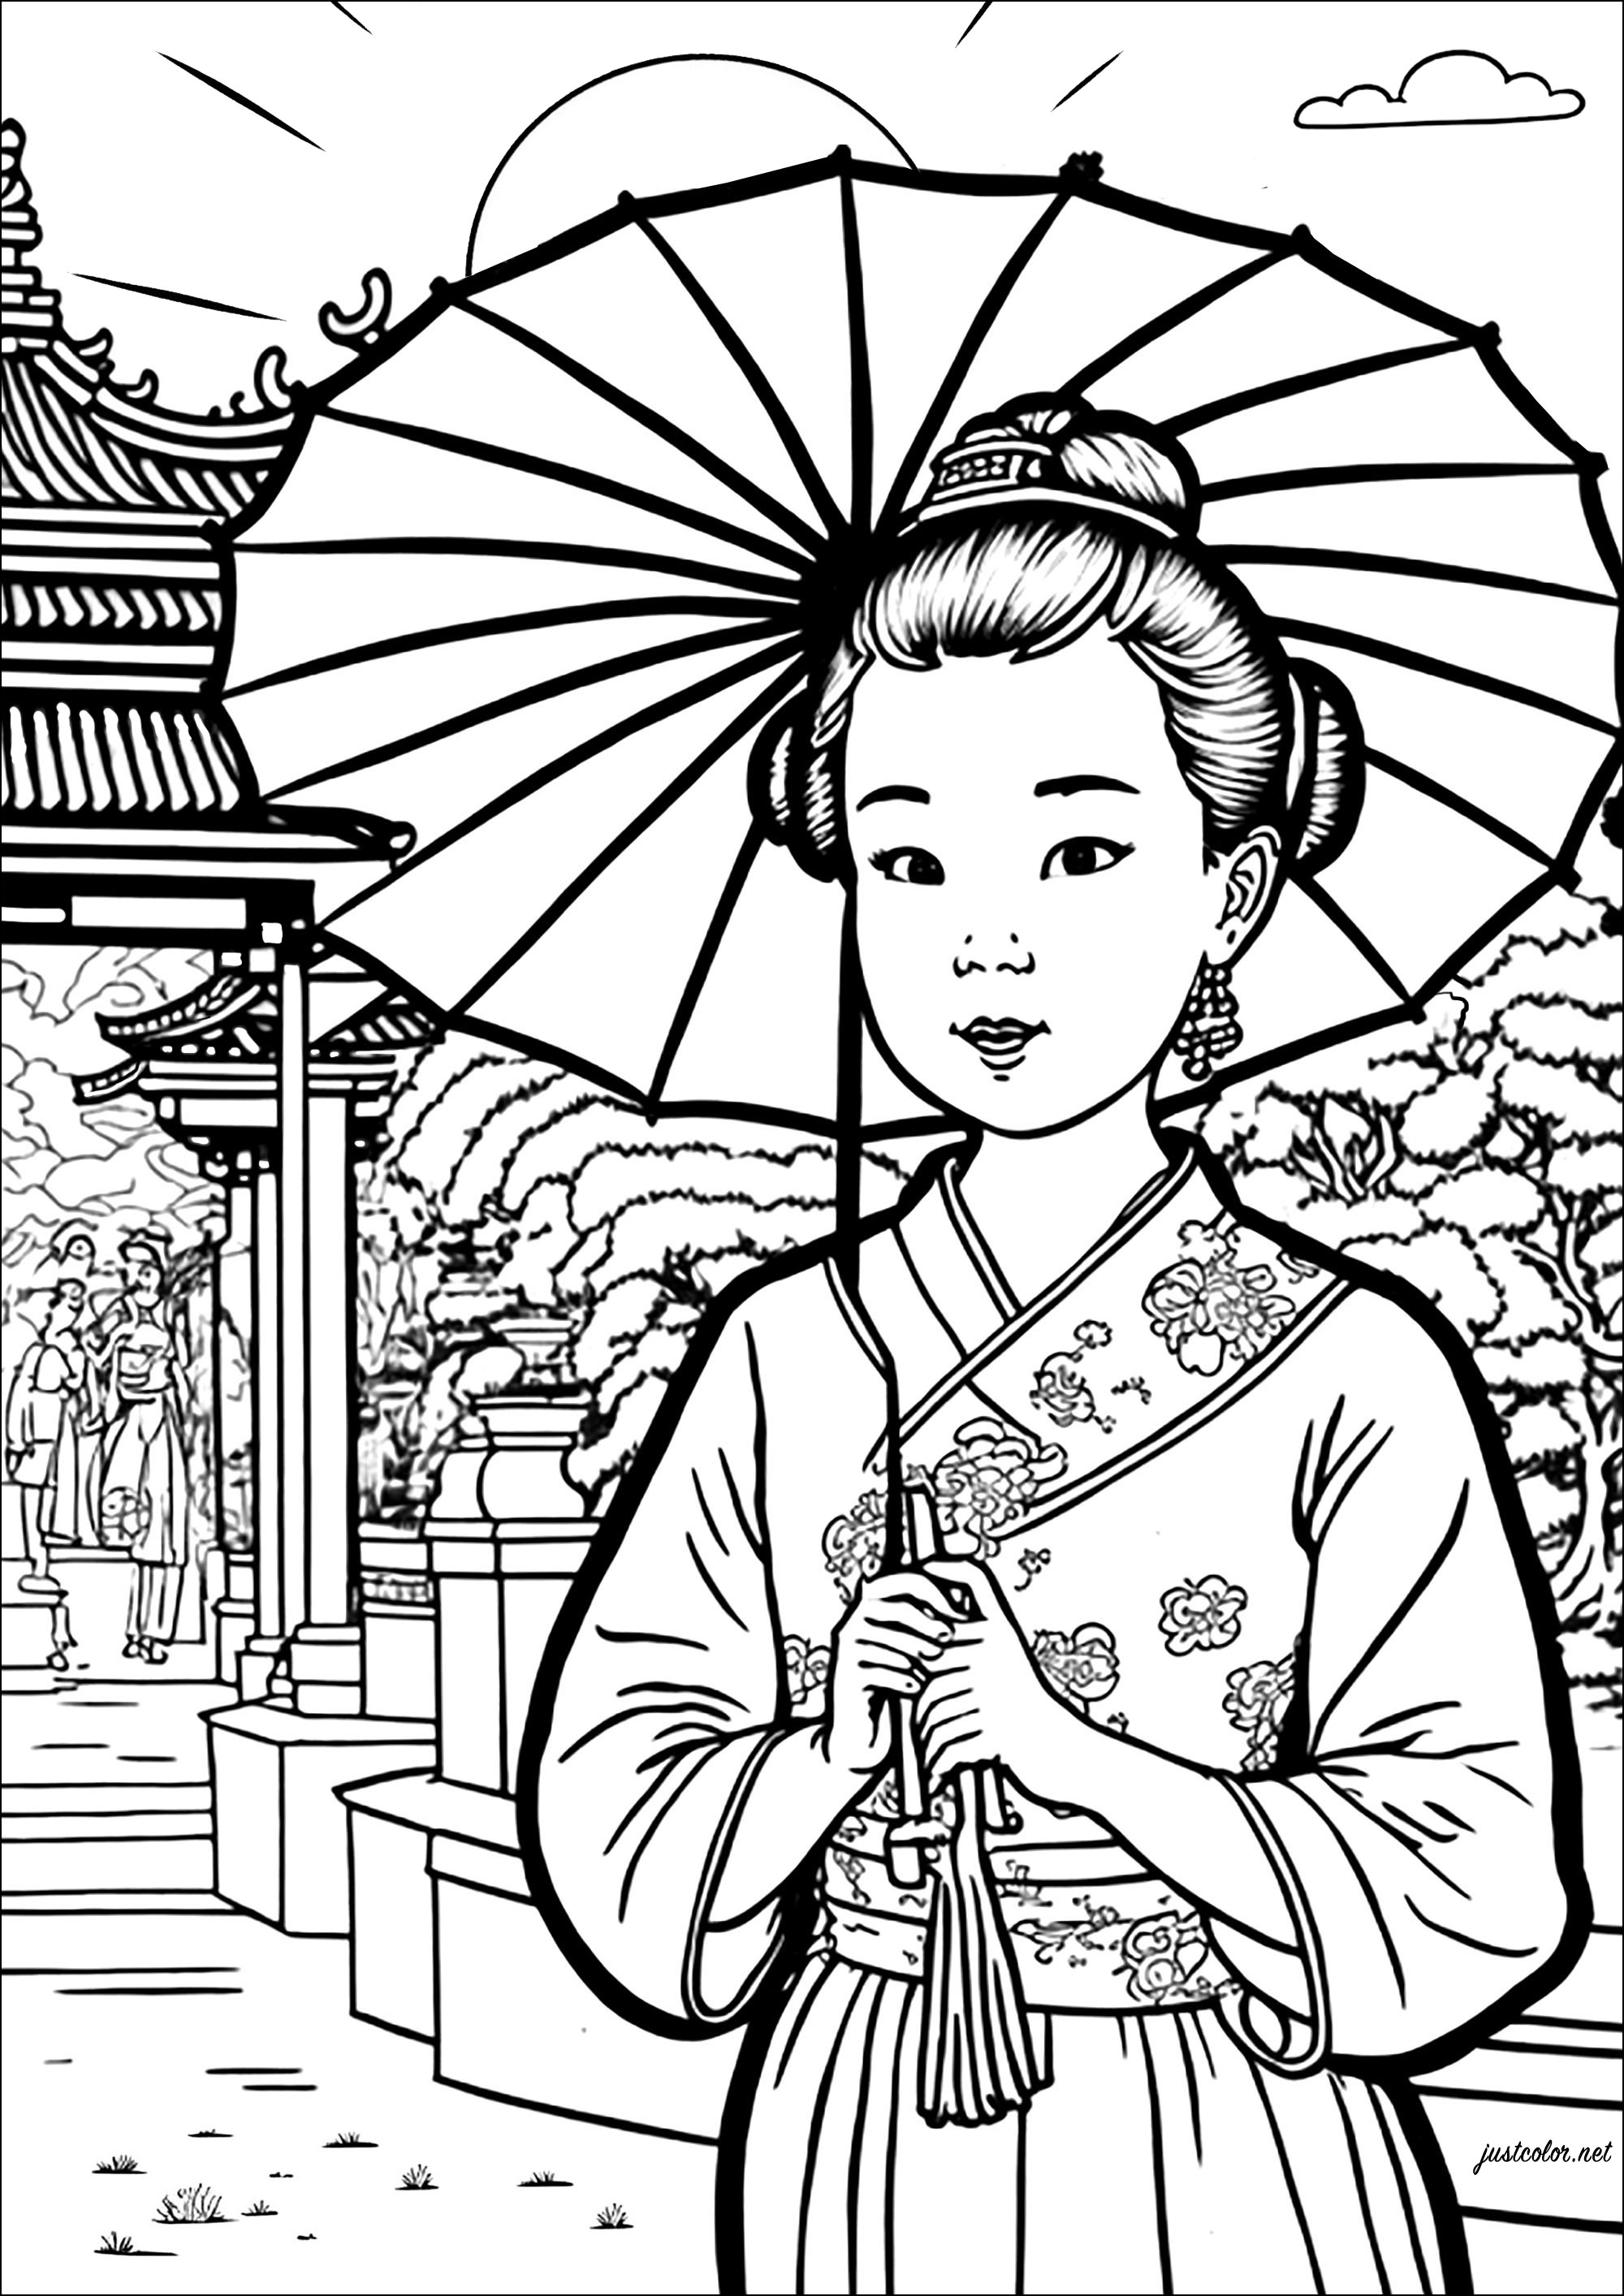 Coloriage d'une jeune femme chinoise avec une ombrelle. Coloriez également le joli temple et le jardin en arrière-plan de ce beau dessin.